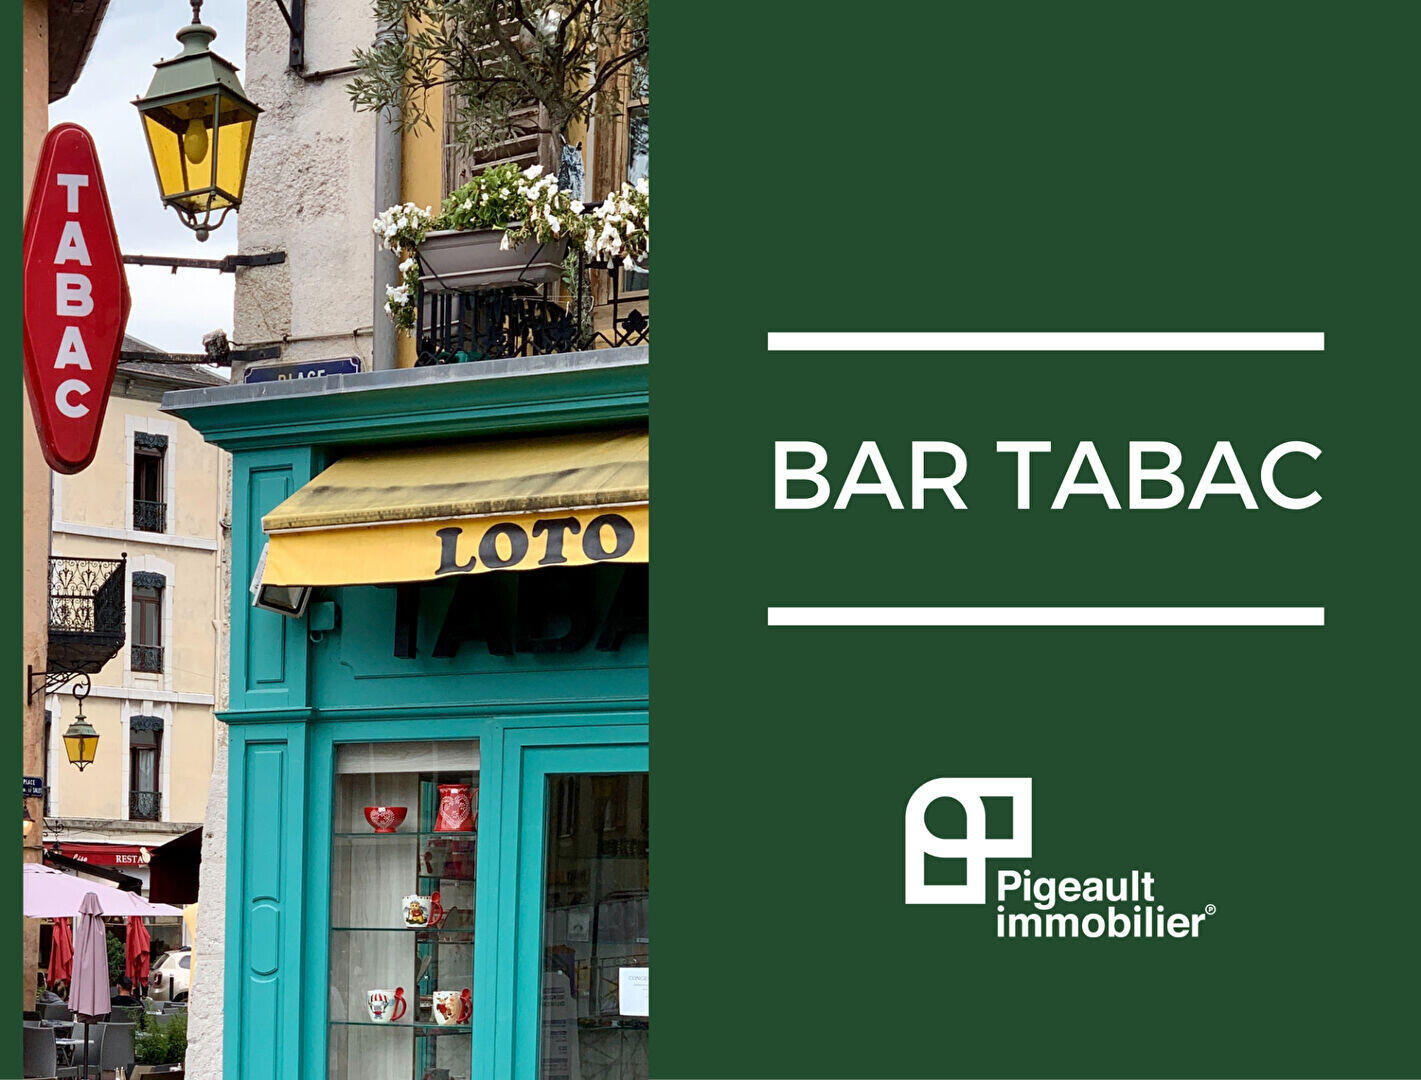 Vente bar Tabac appartement à 25 min de Rennes